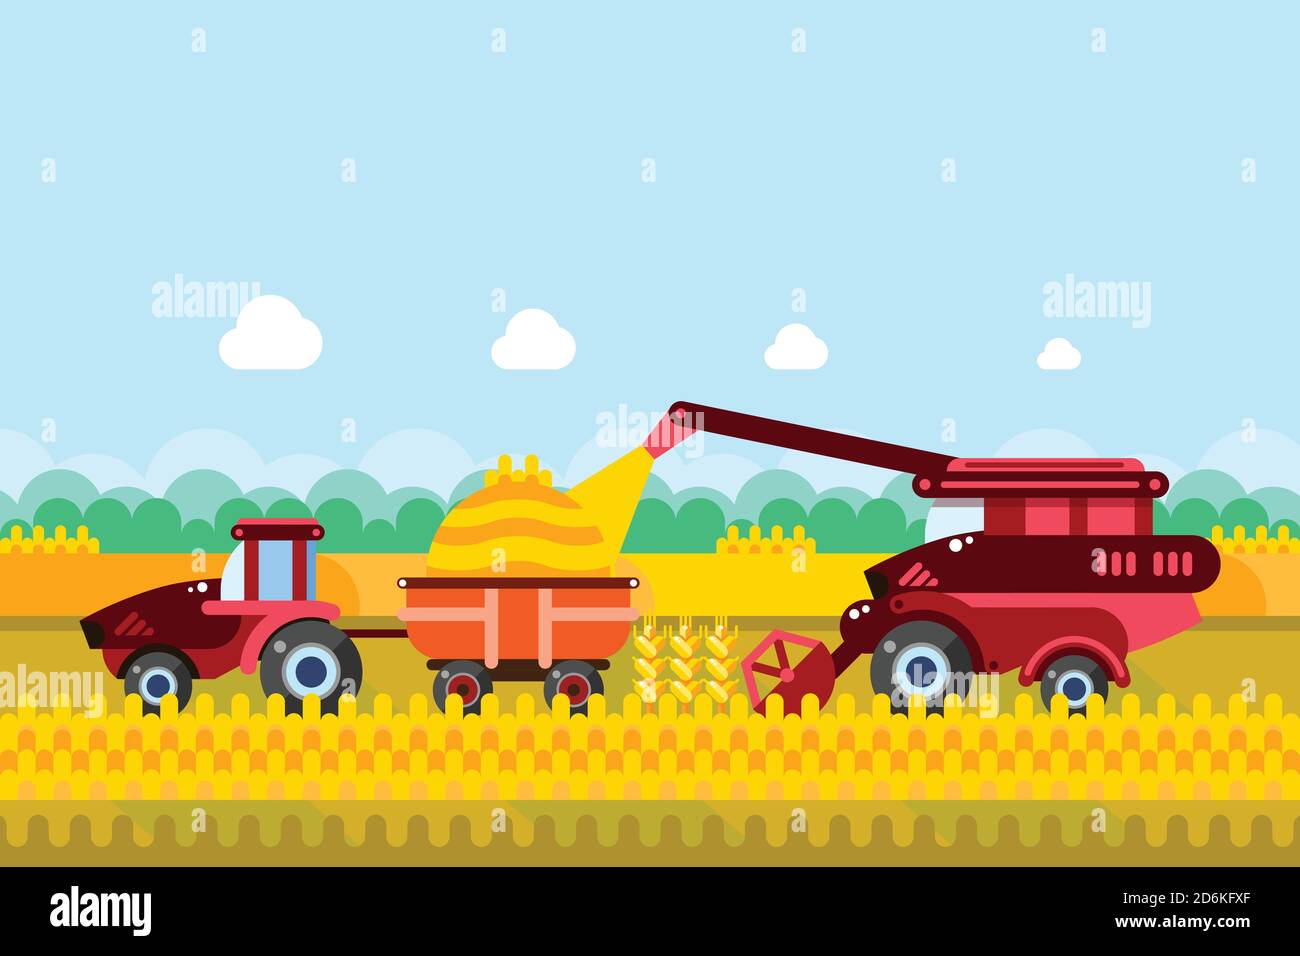 Landwirtschaft und Landwirtschaft Erntekonzept. Vektor flache Abbildung von Mähdrescher und Traktor auf Weizen oder Mais Getreidefeld. Ländliche Ackerland Landschaft BA Stock Vektor